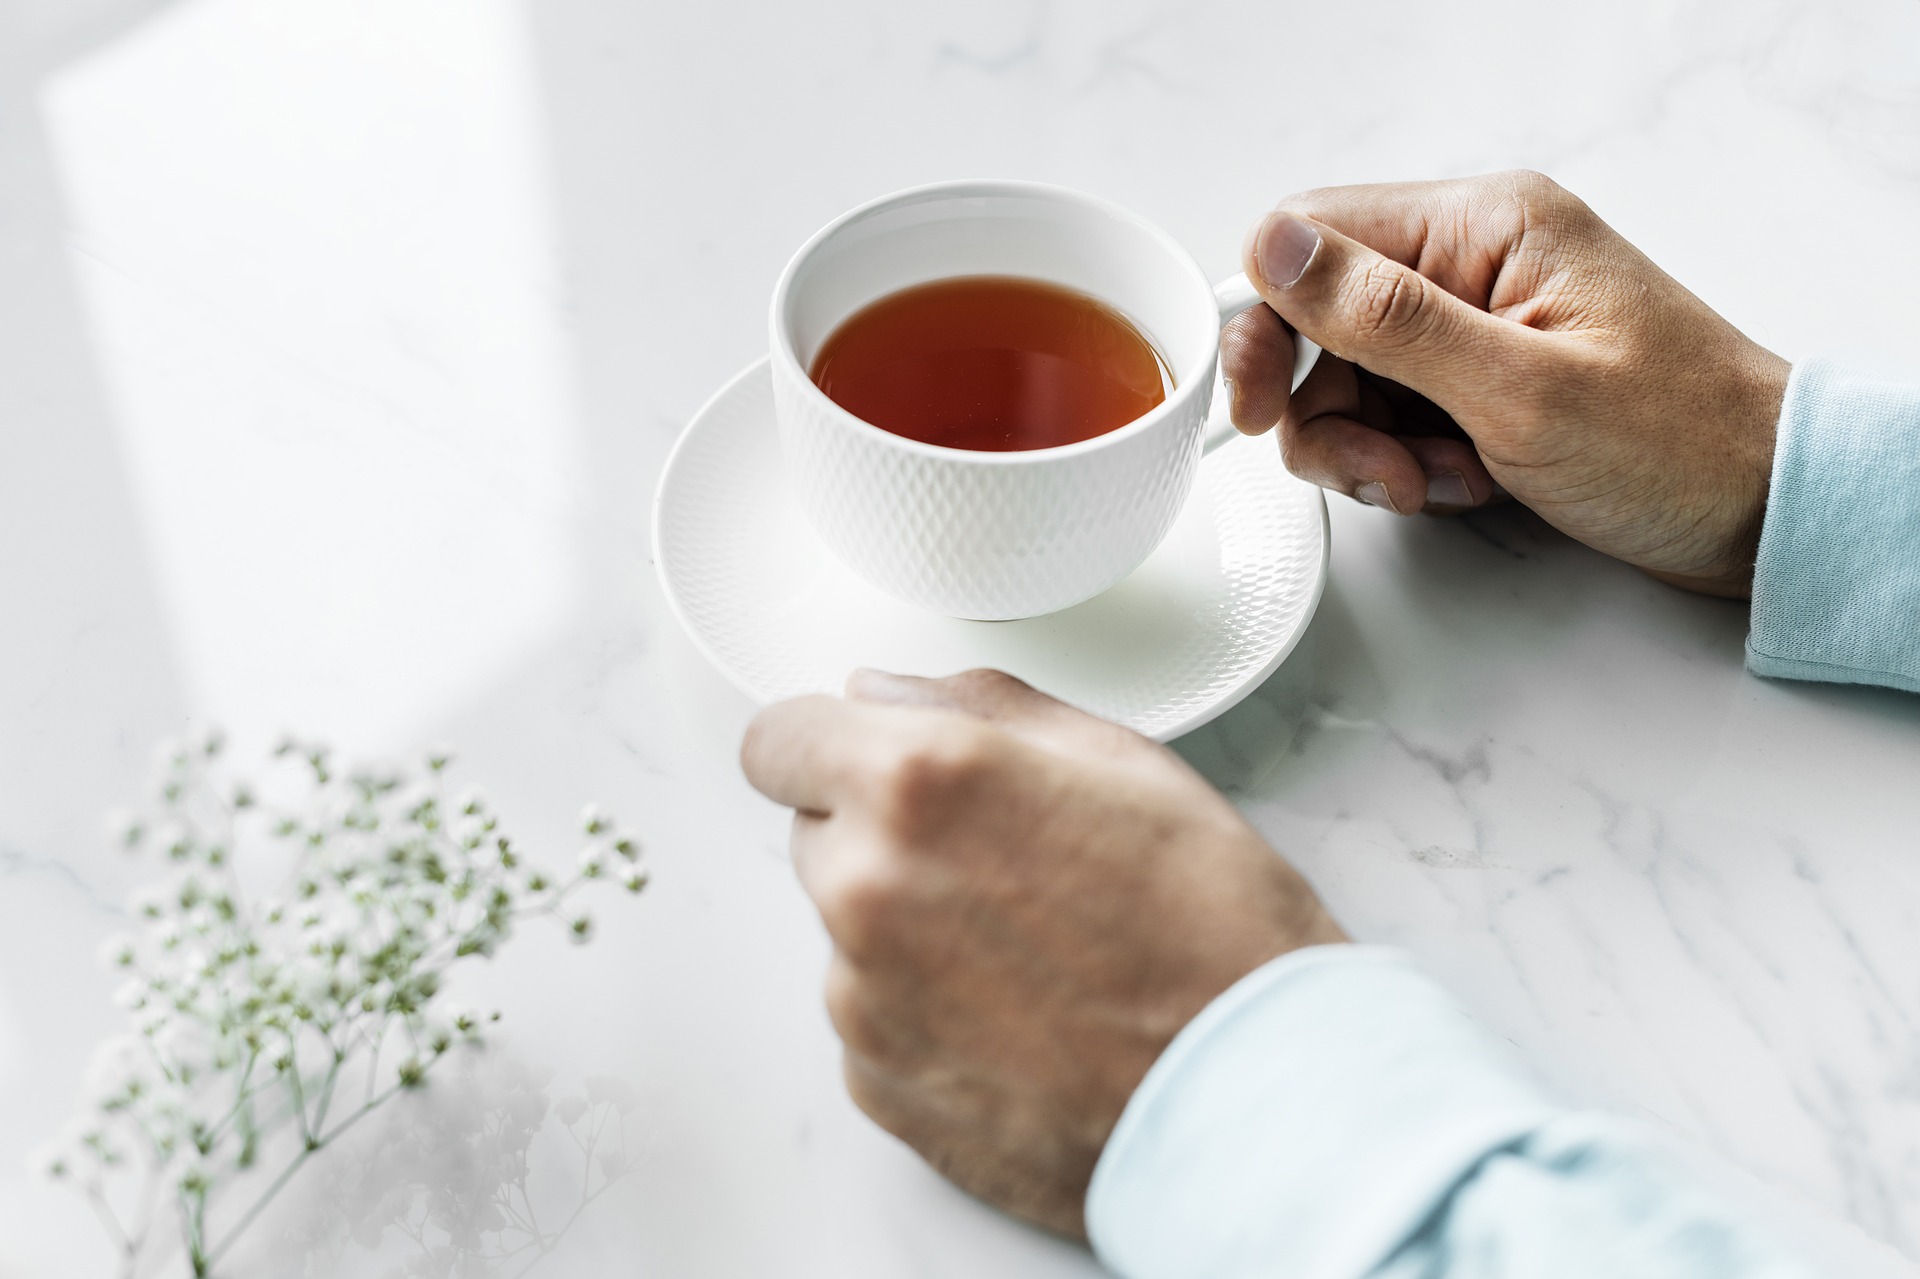 Earl Grey Tea - The Unique Flavor of Earl Grey Tea